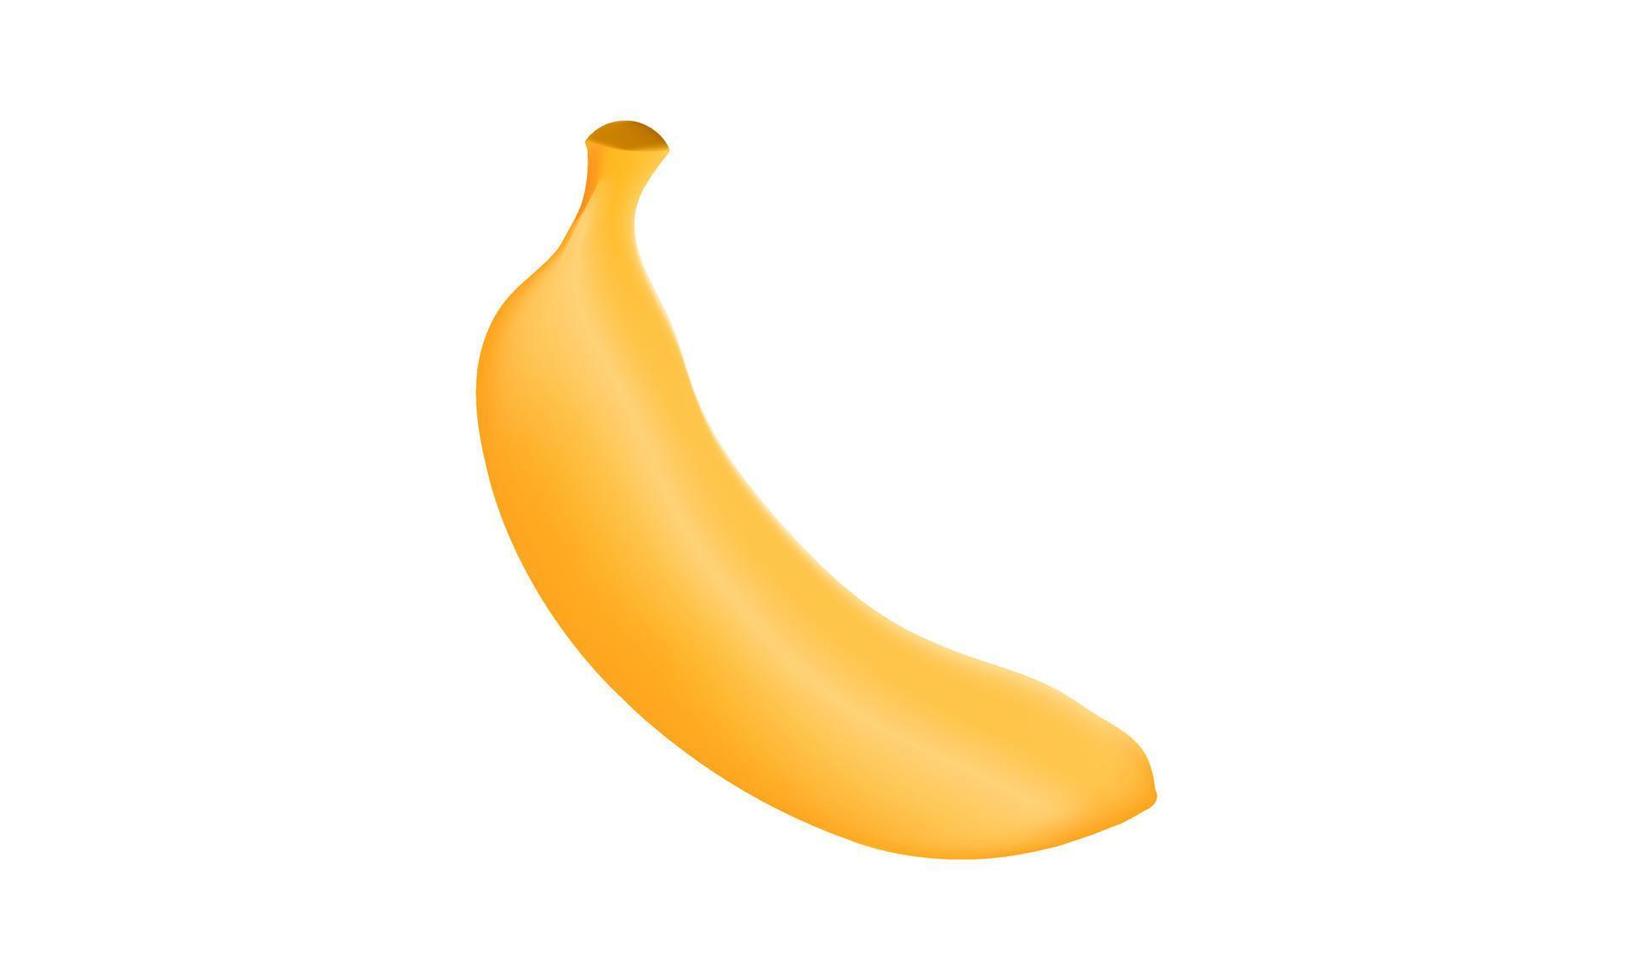 illustratie van banaan fruit met maas techniek vector